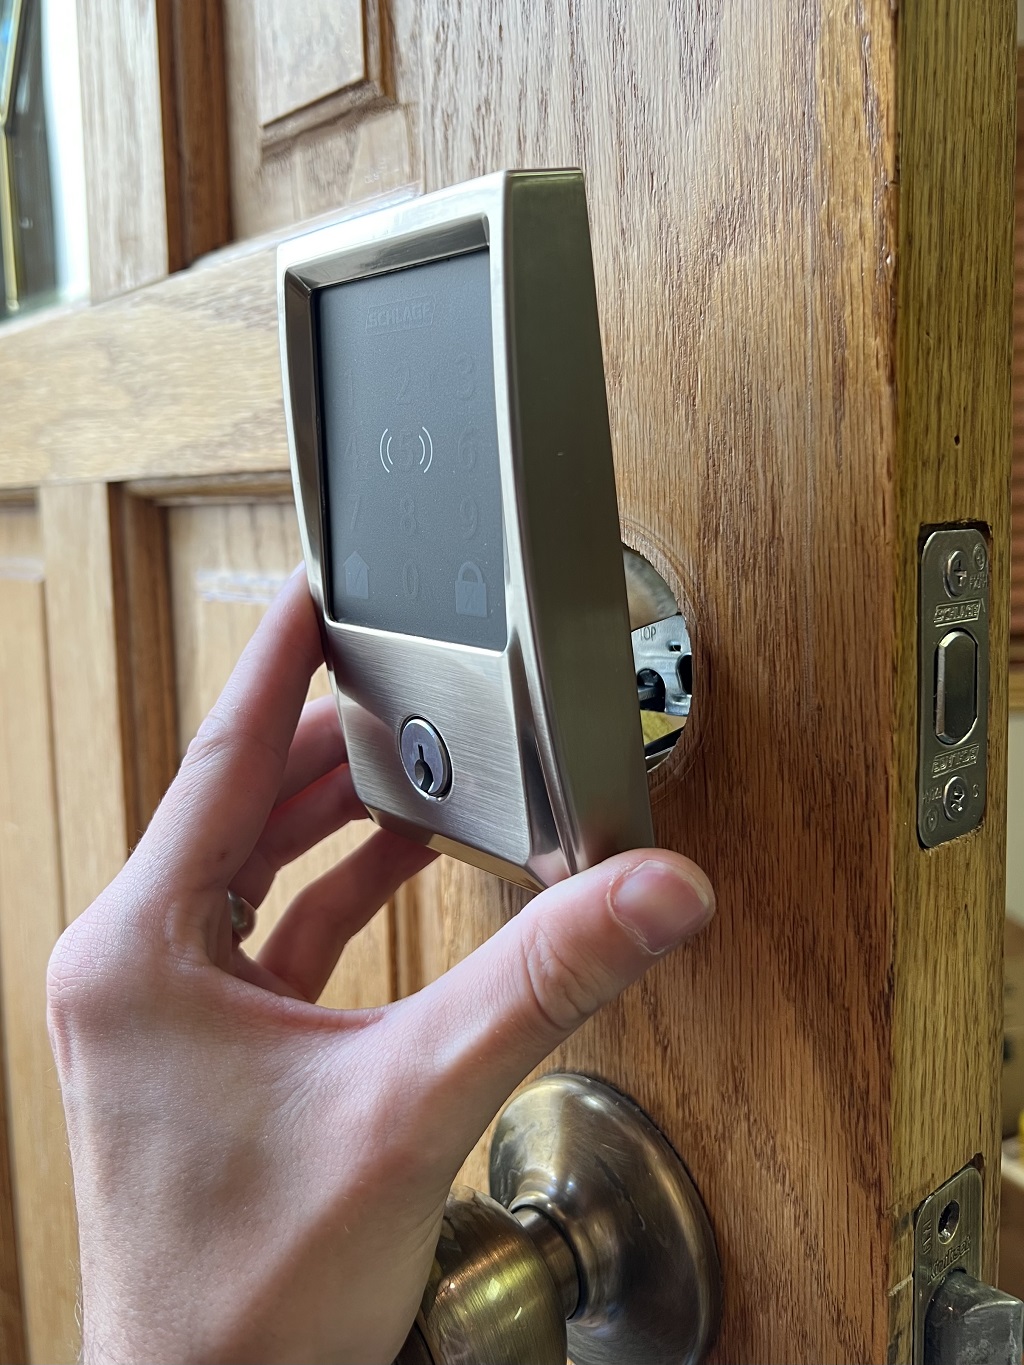 What is the best type of door lock security?